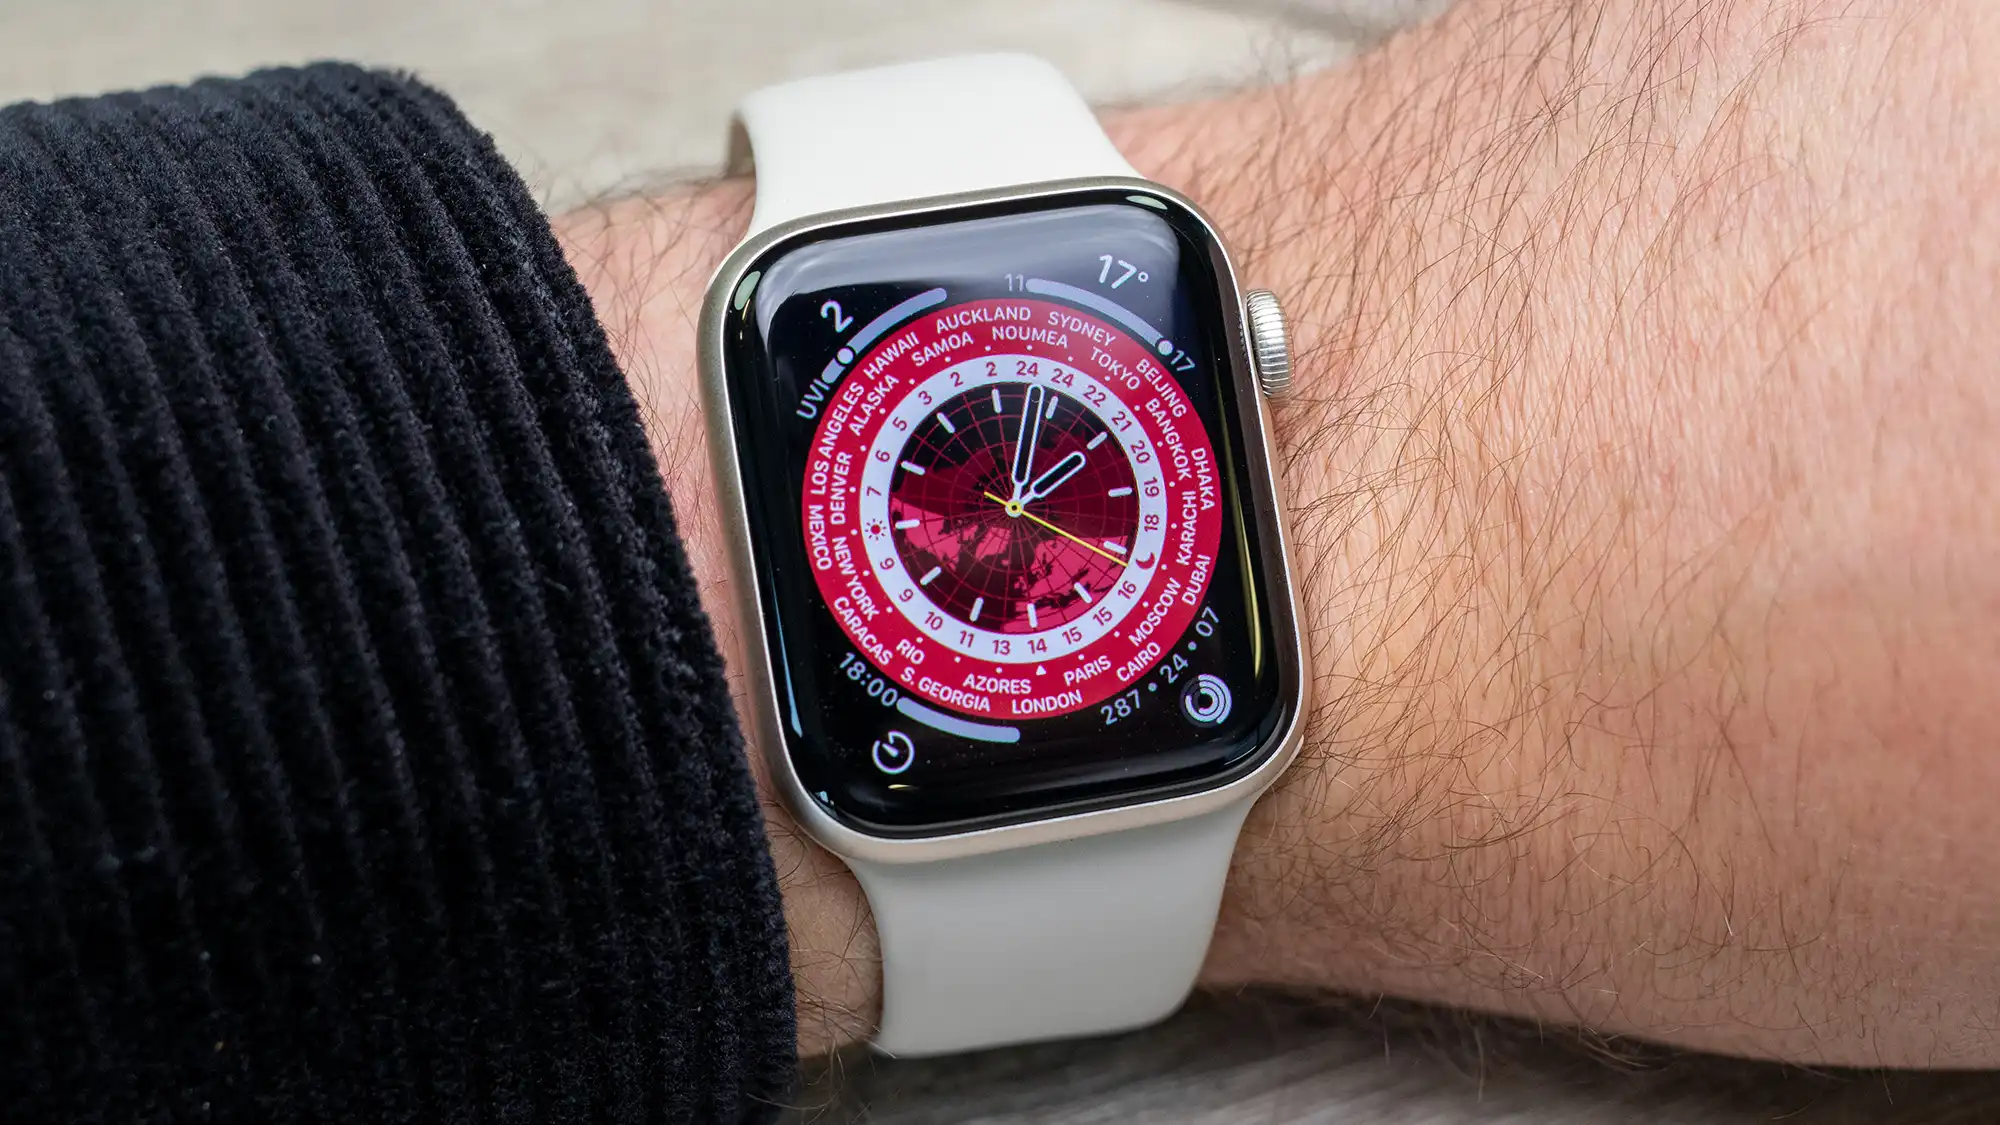 L'Apple Watch SE de milieu de gamme est une très bonne montre intelligente, mais elle semble un peu chère pour ce qu'elle propose.